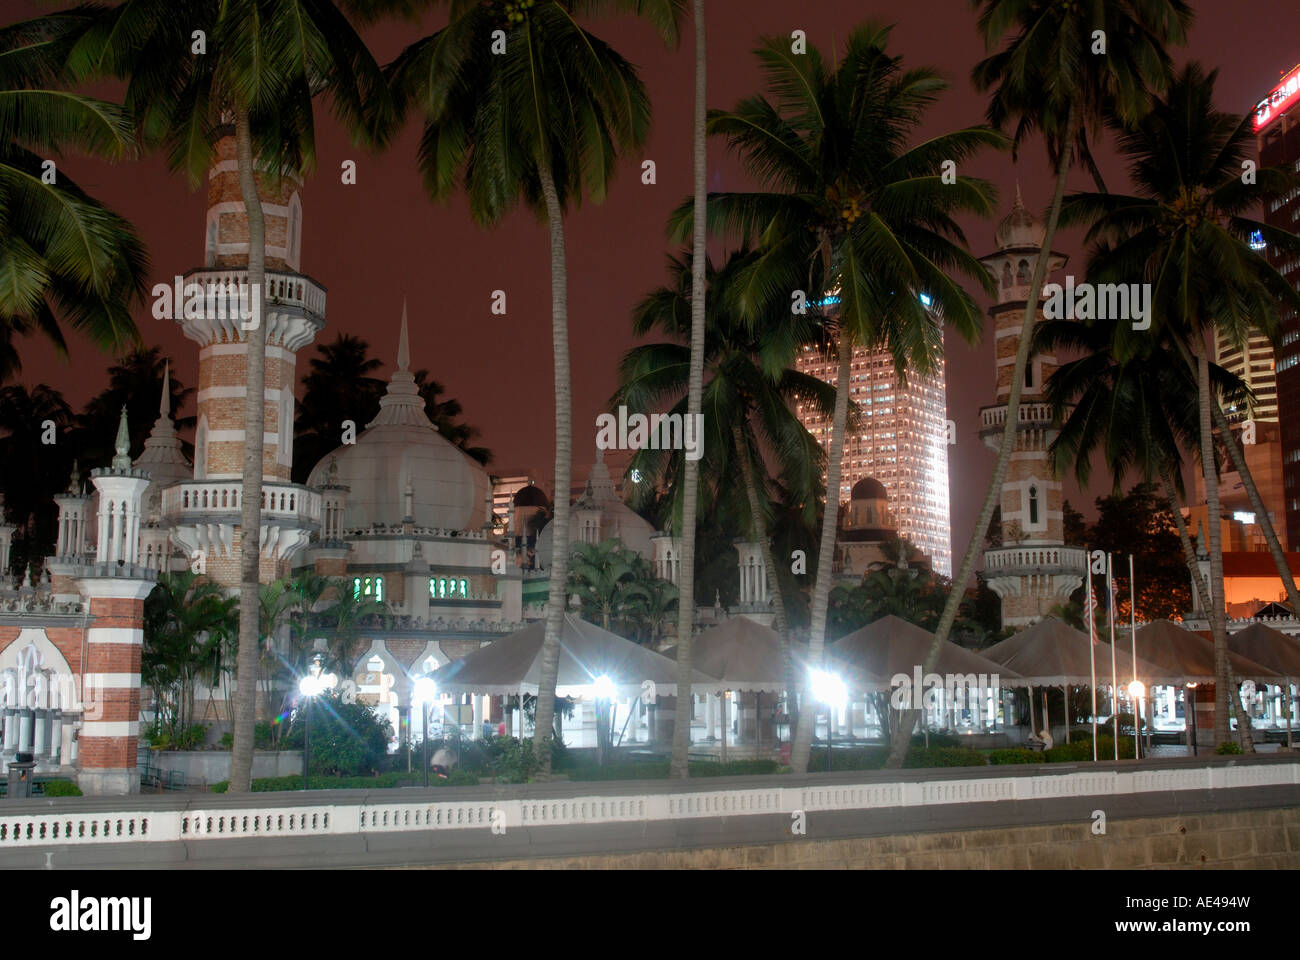 Mosquée Jamek de nuit, un bon exemple de l'architecture islamique du nord de l'Inde, Kuala Lumpur, Malaisie, Asie du Sud, Asie Banque D'Images